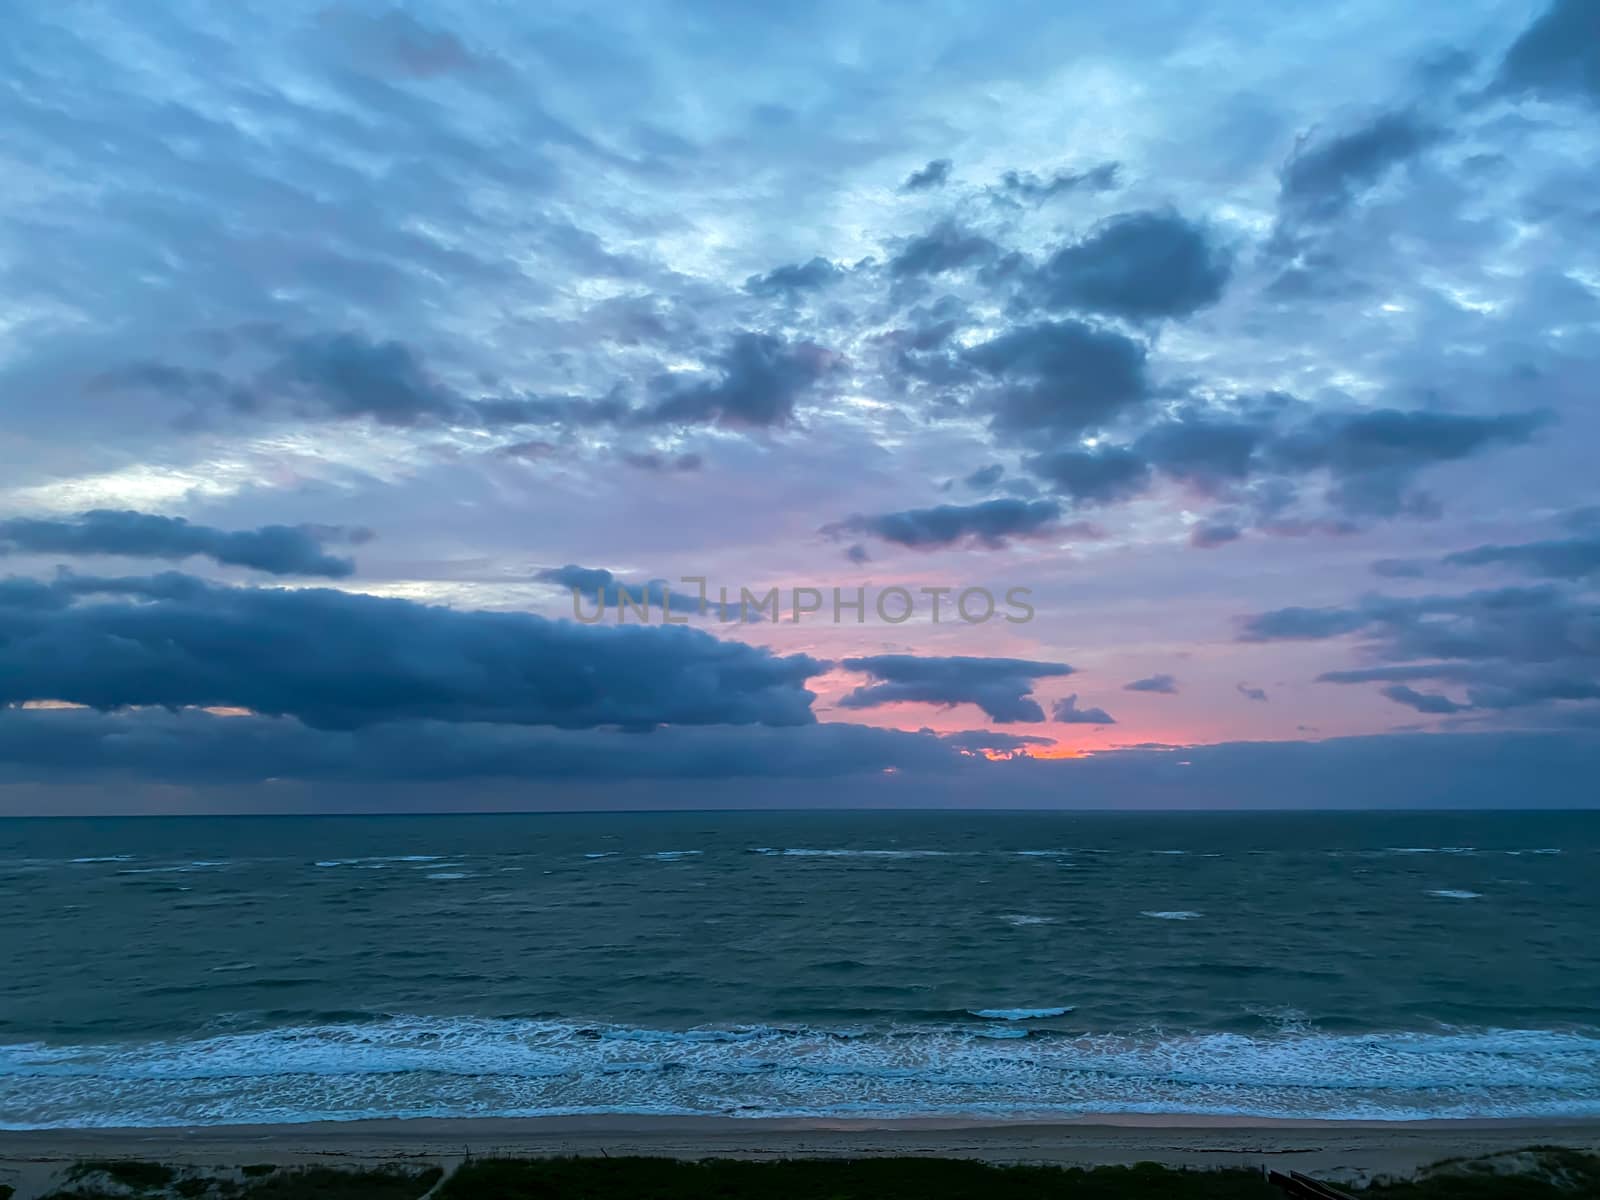 A vibrant sunrise over the Atlantic Ocean by Jshanebutt